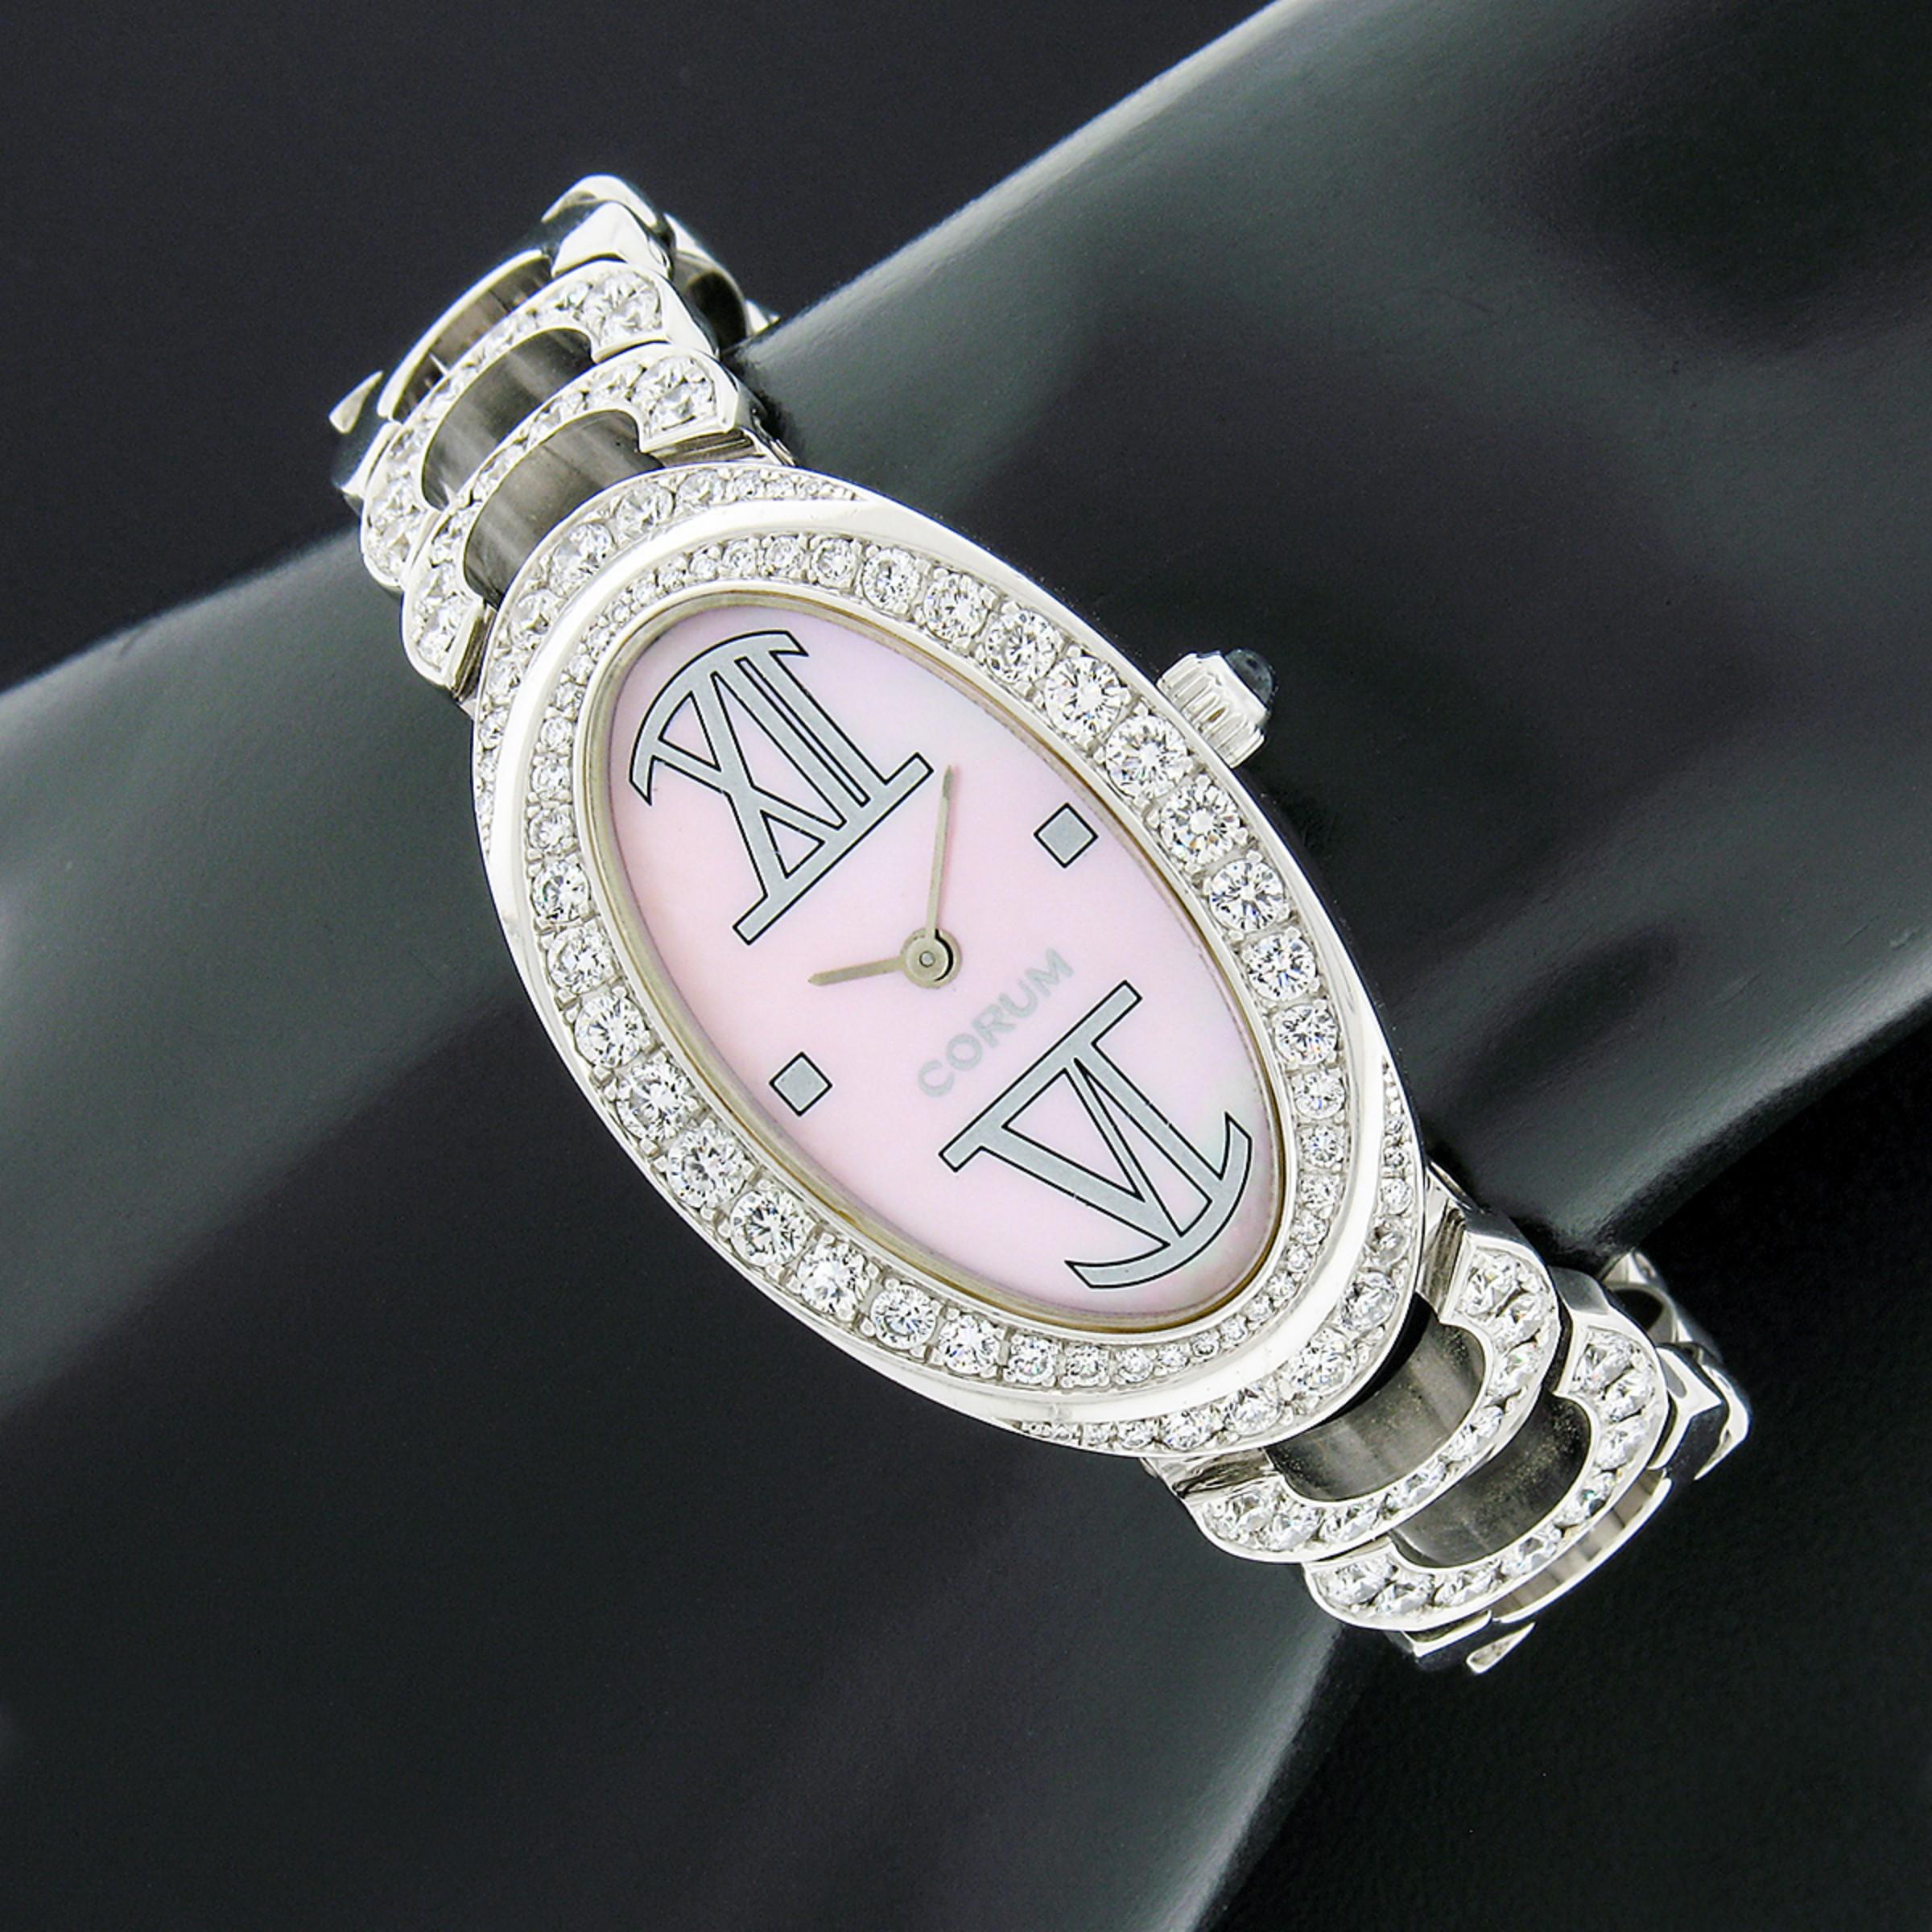 Diese einzigartige und luxuriöse Corum Ovale Armbanduhr verfügt über ein ovales, 23,9 mm breites Gehäuse aus massivem 18 Karat Weißgold. Das Gehäuse ist mit 66 pavégefassten runden Diamanten im Brillantschliff von sehr feiner Qualität (G-VS2)